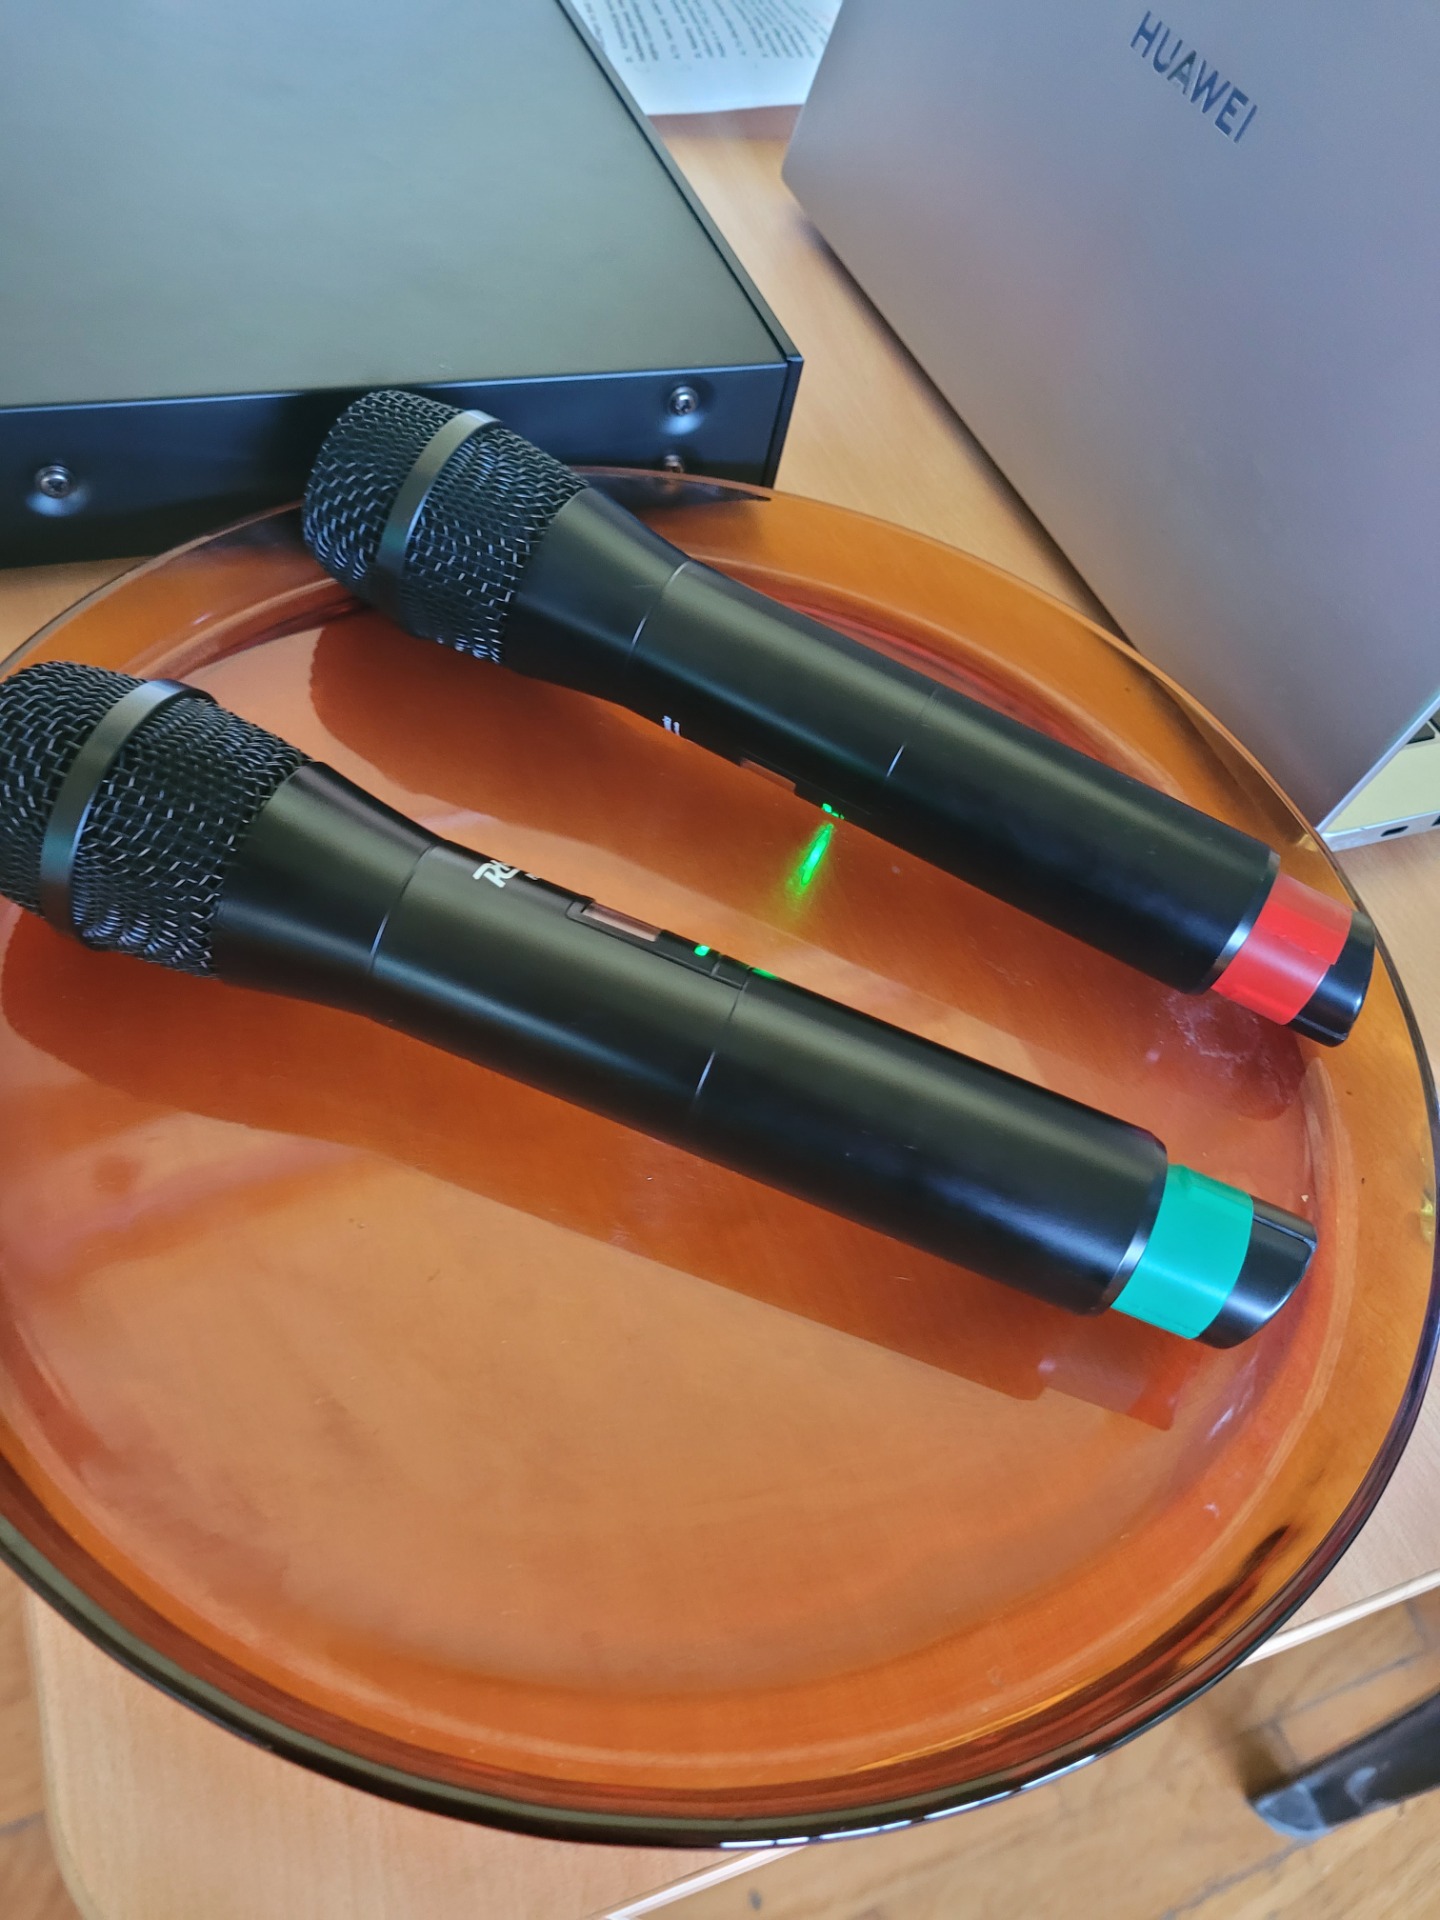 Dwa mikrofony leżą na pomarańczowej szklanej podstawce.